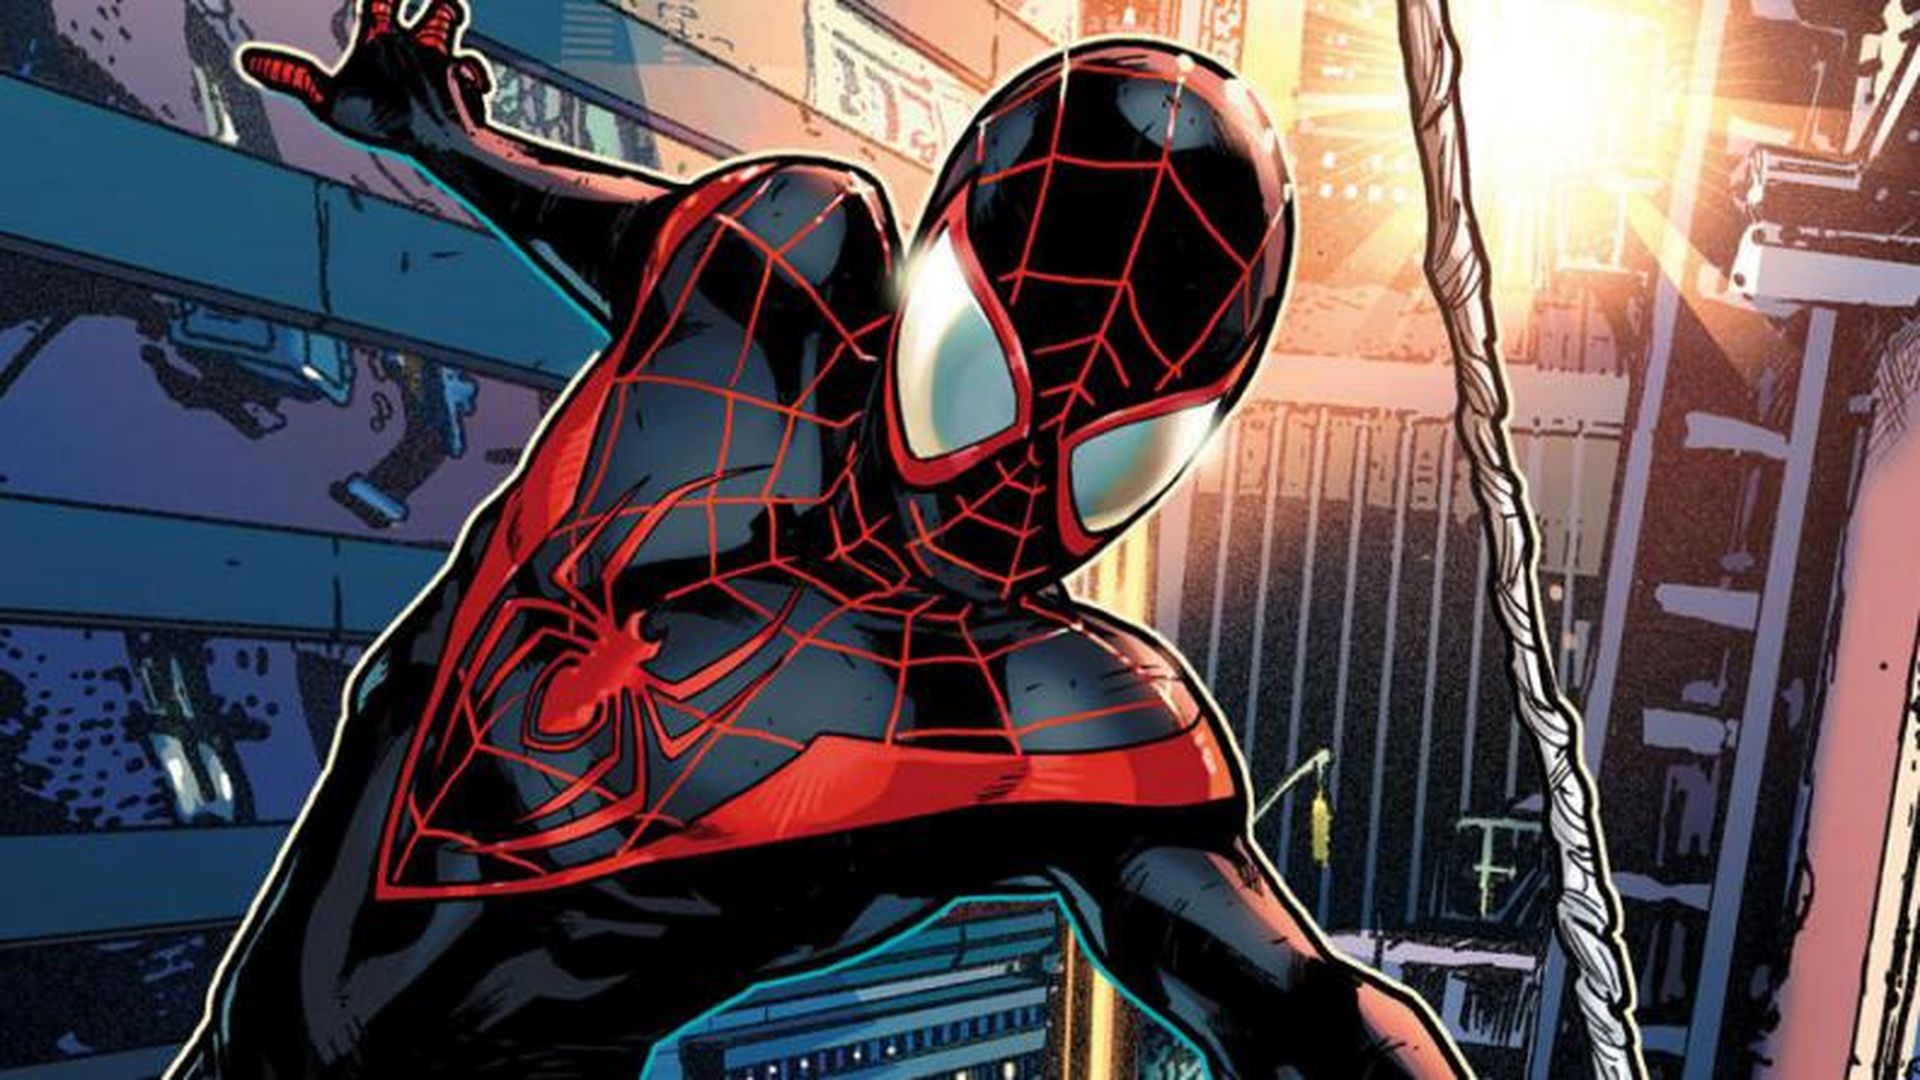 unocero - Reseña 'Spider-Man: Miles Morales': PS5 inicia con el